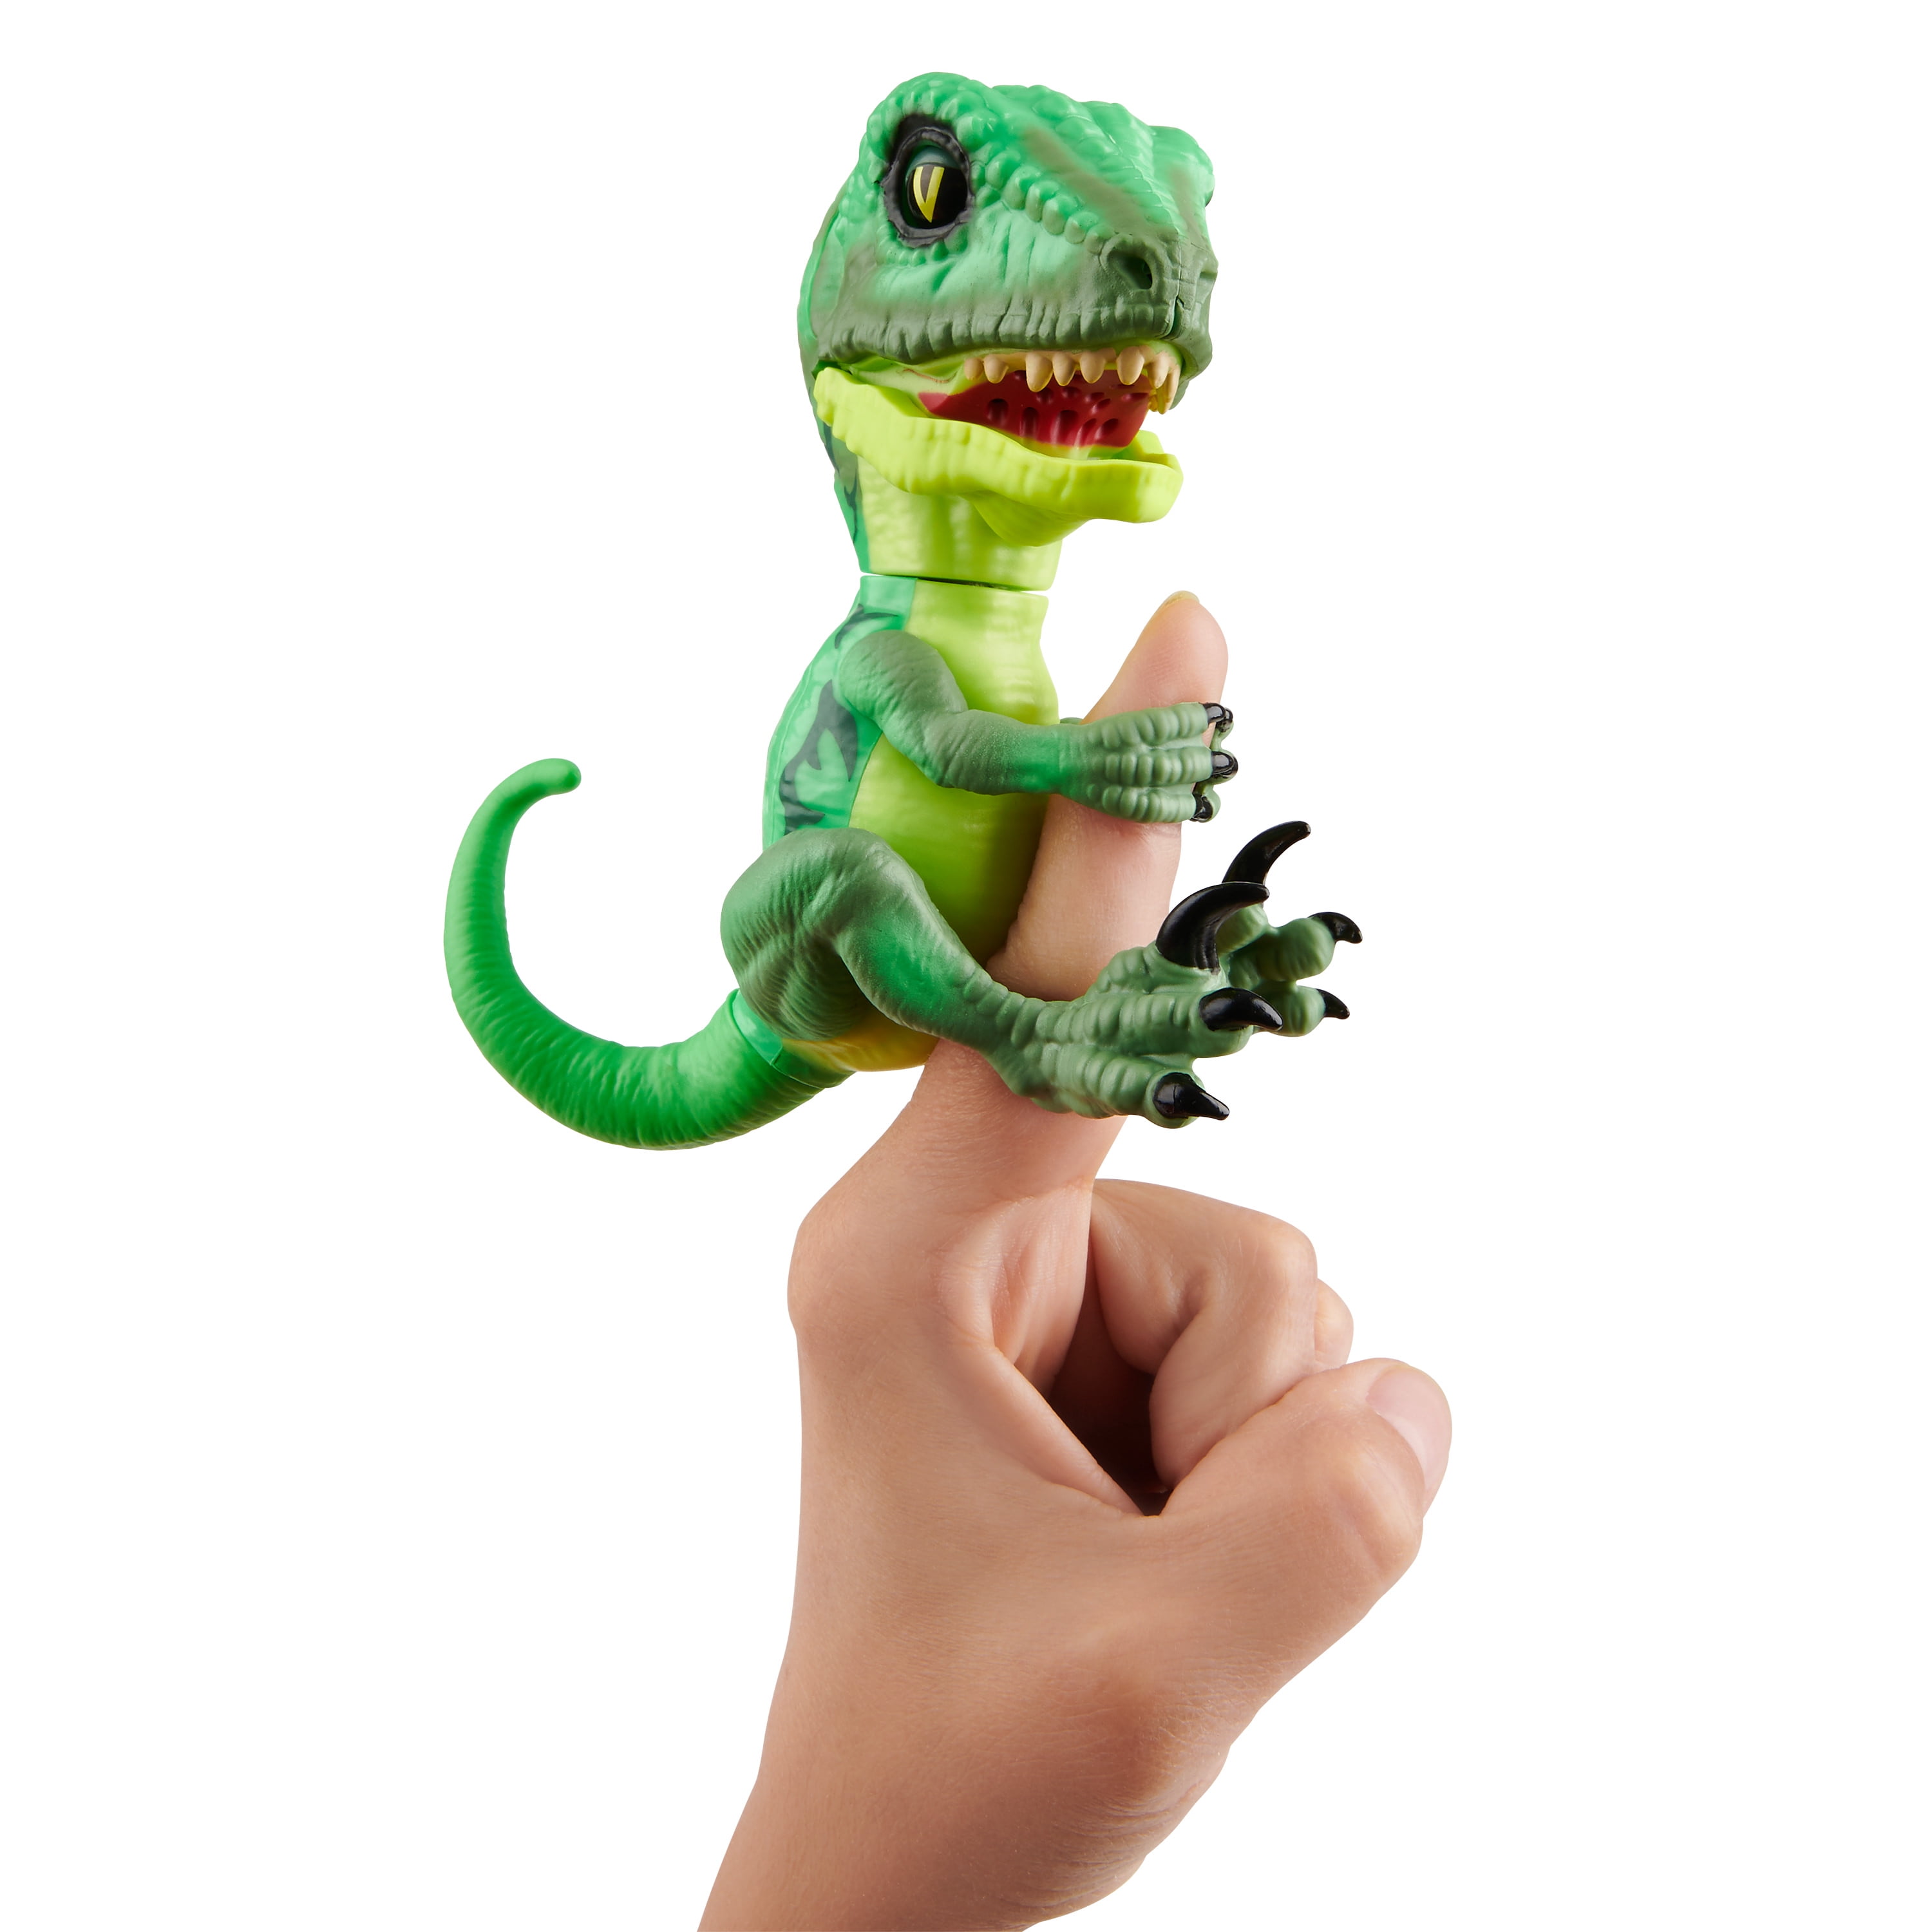 Untamed Raptor Series 2 By Fingerlings Hazard Green